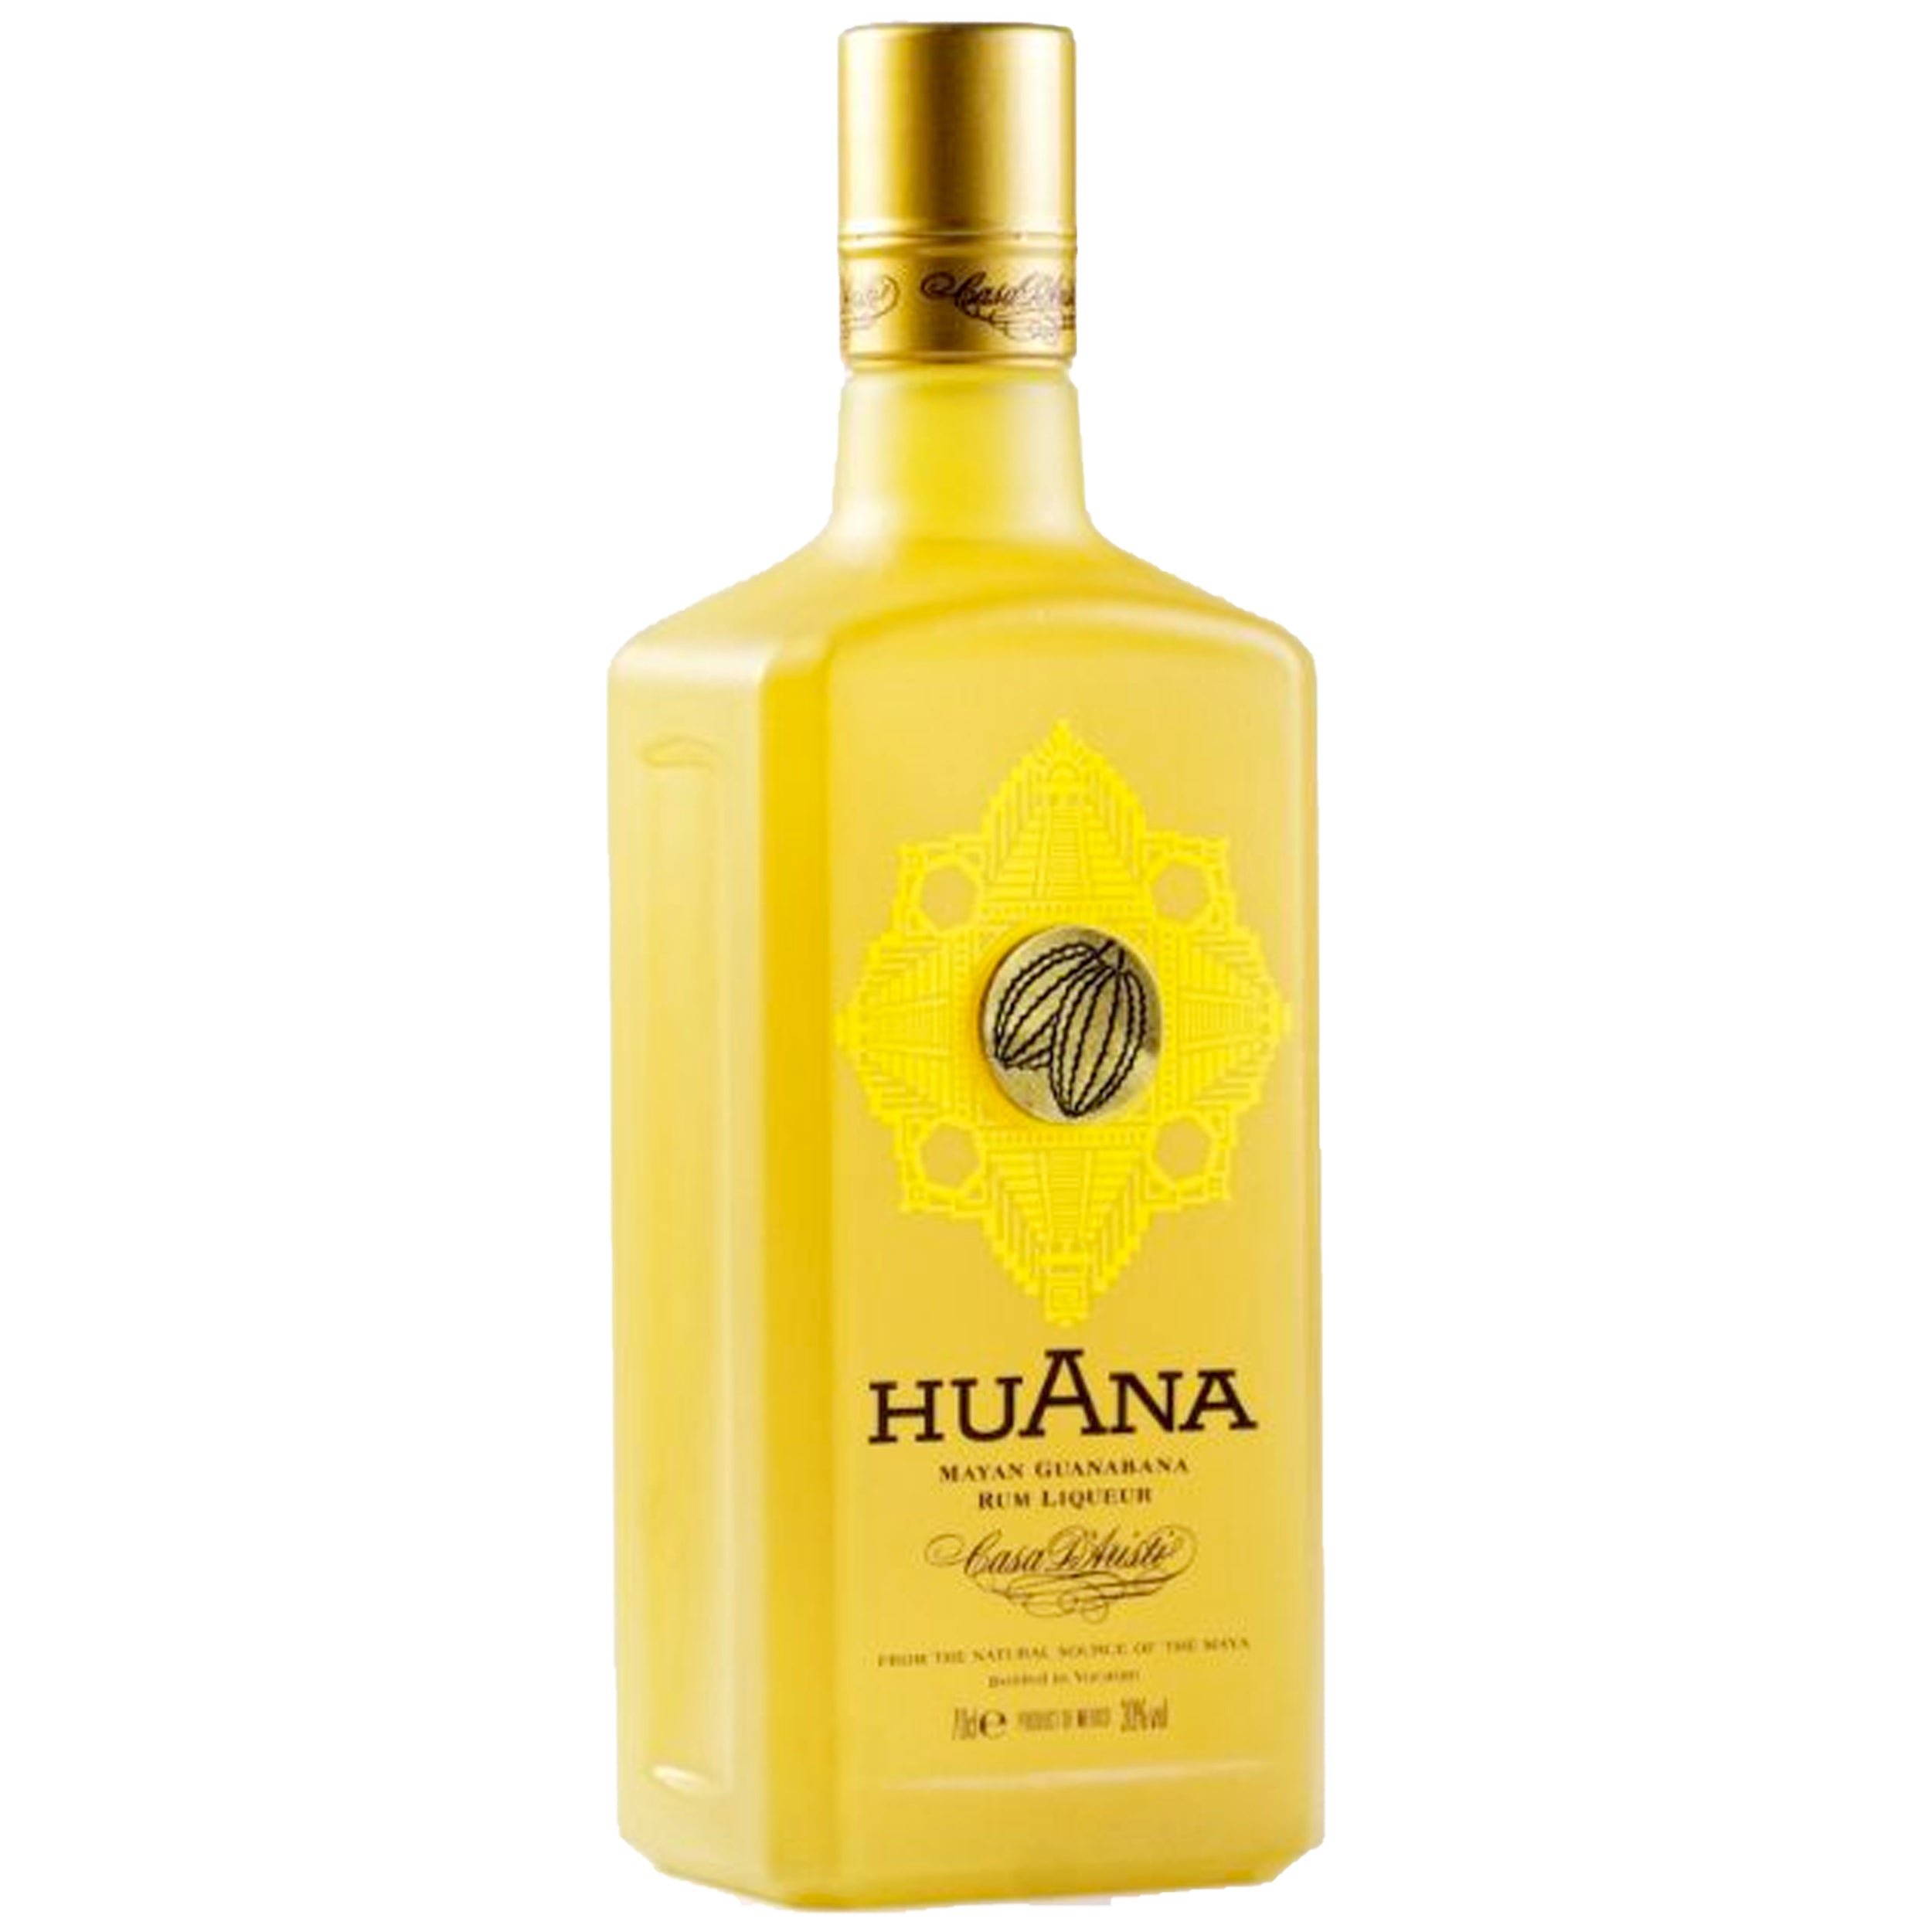 Huana Mayan Guanabana Rum Liqueur